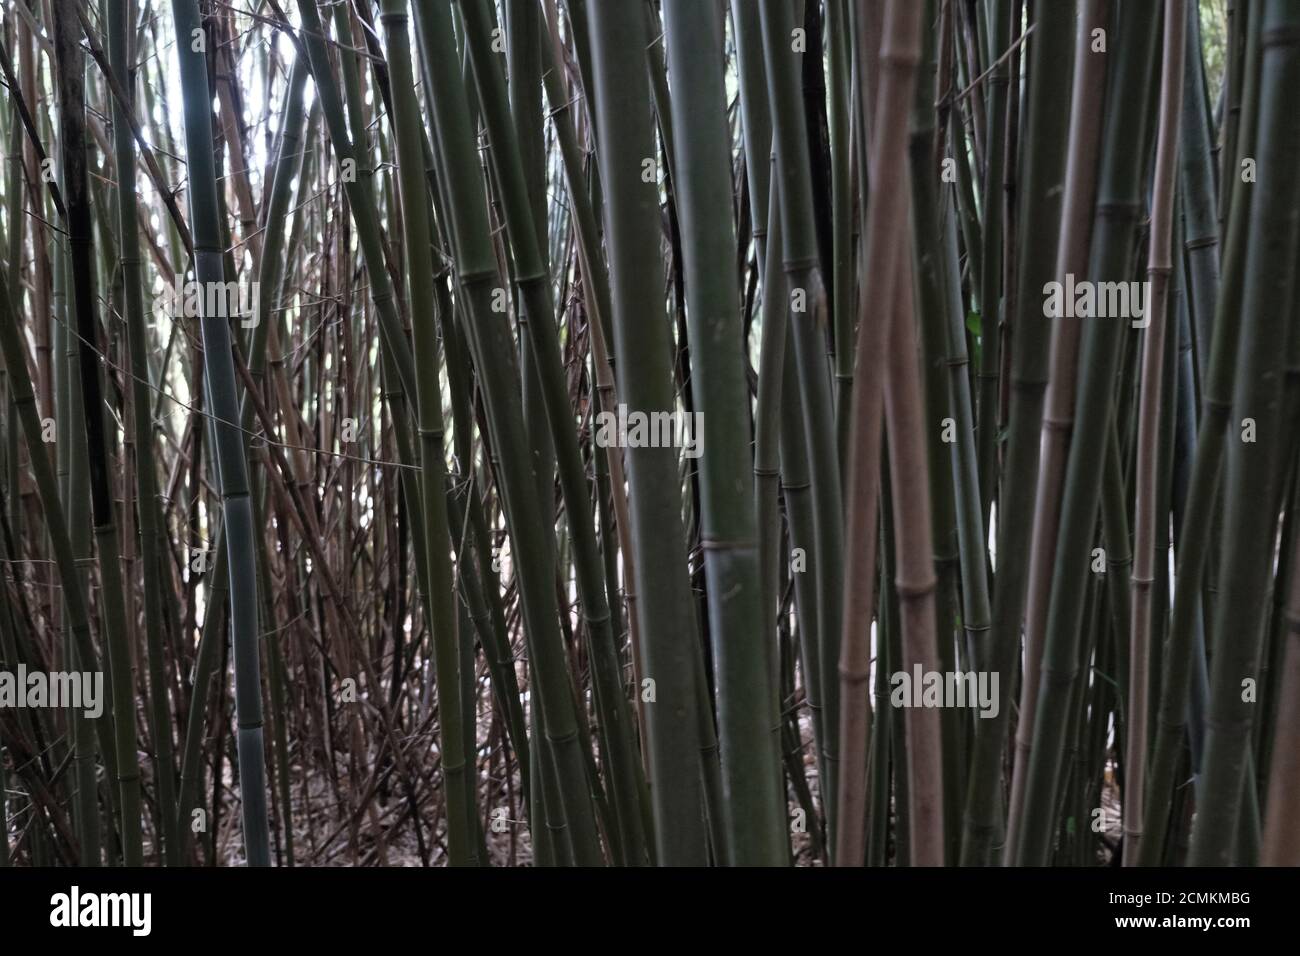 lit en roseau de bambou luxuriant avec feuilles de printemps. Photo de haute qualité Banque D'Images